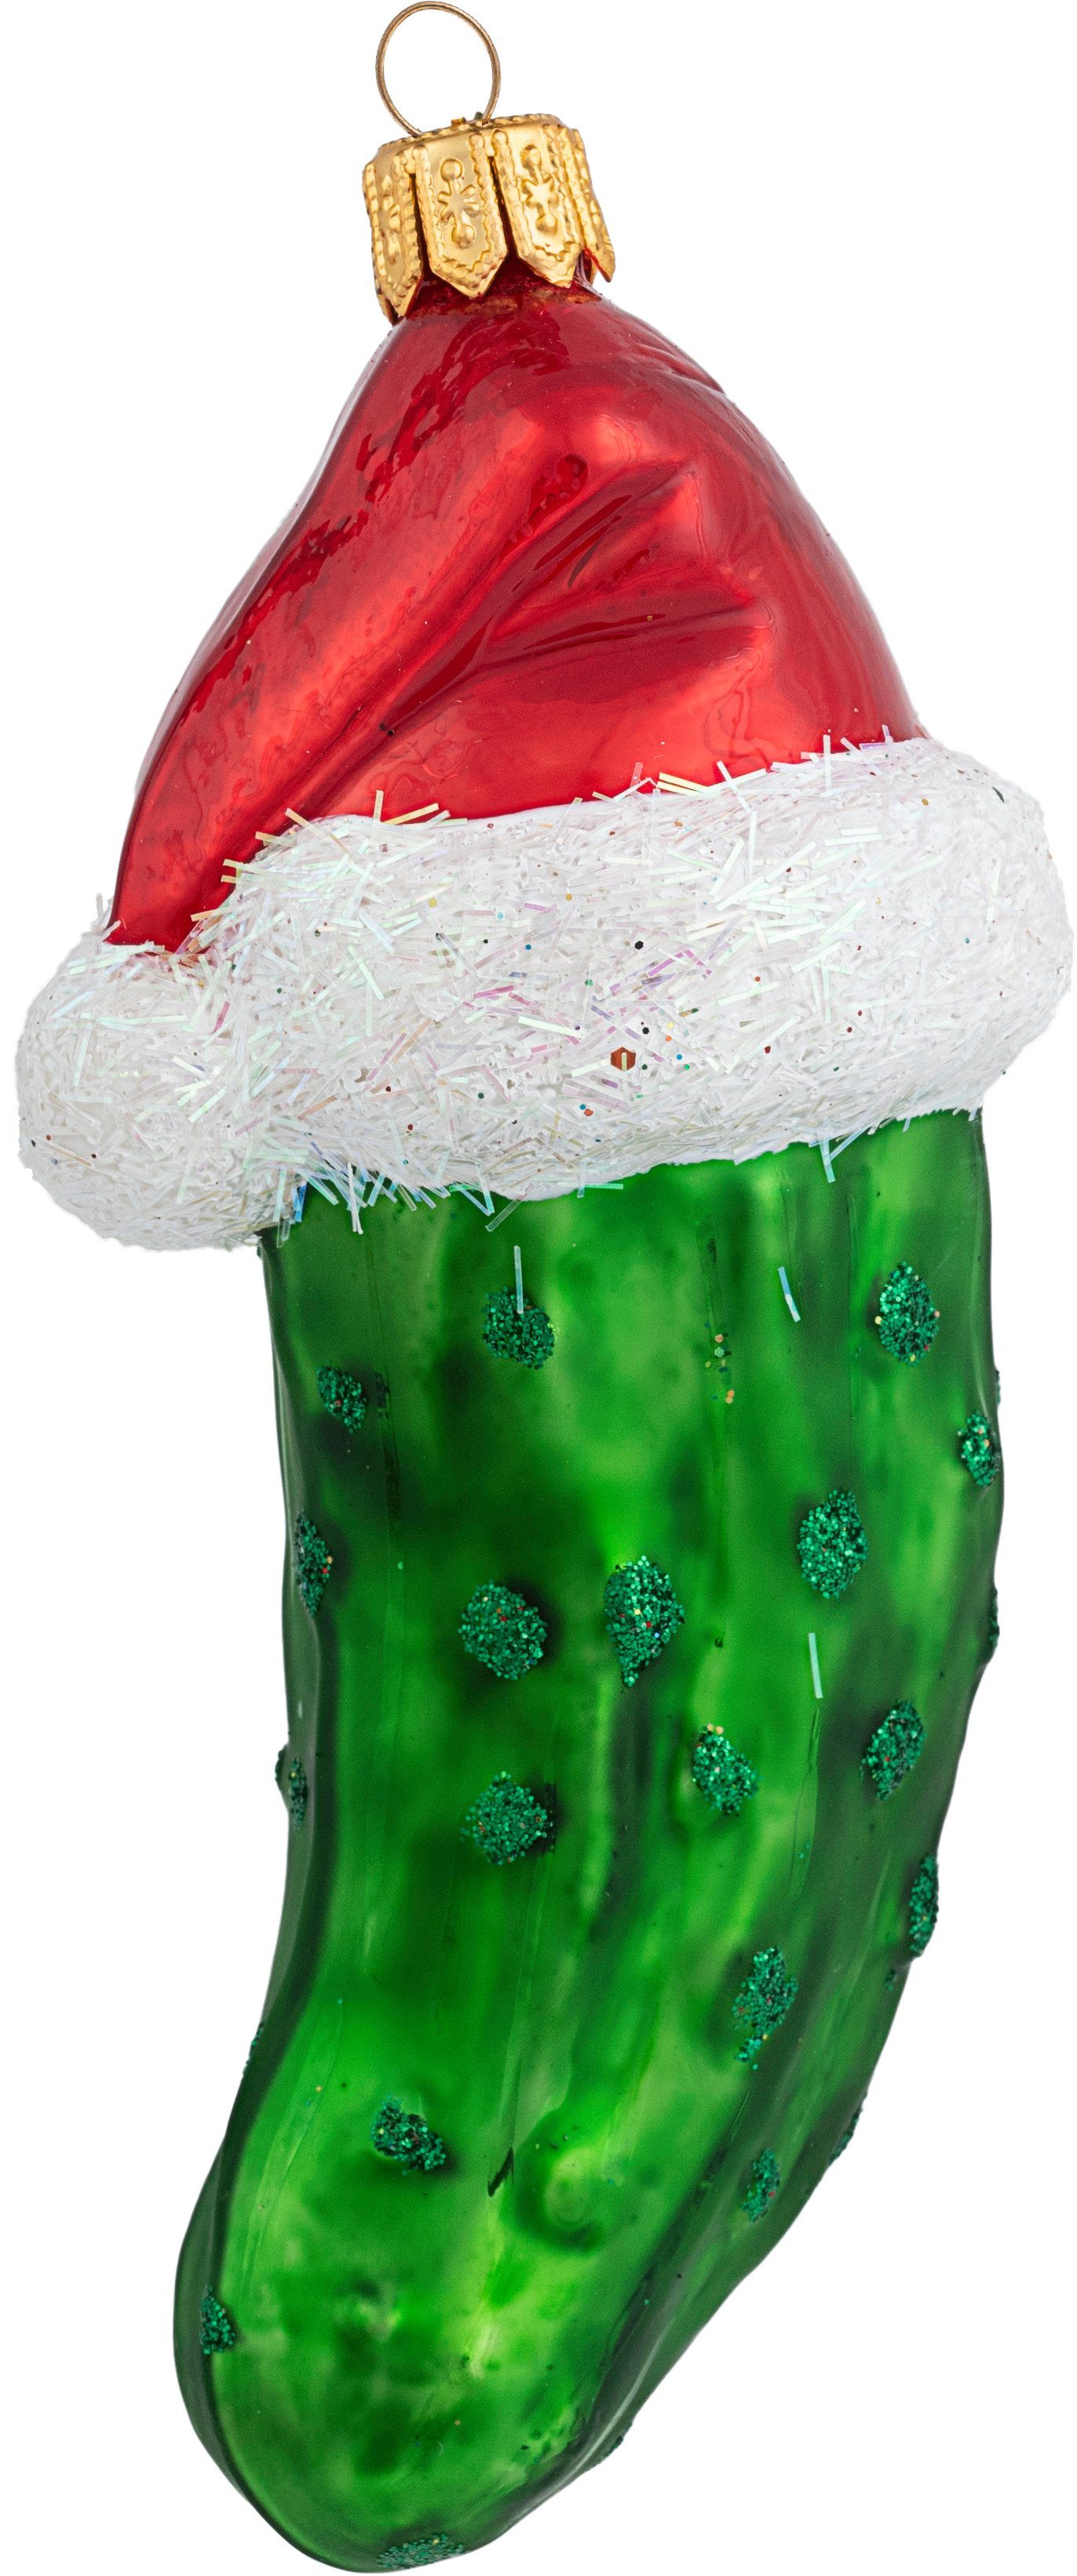 IMPULS 10cm mit Christbaumschmuck, Glas Christbaumschmuck Mütze Weihnachtsgurke grün